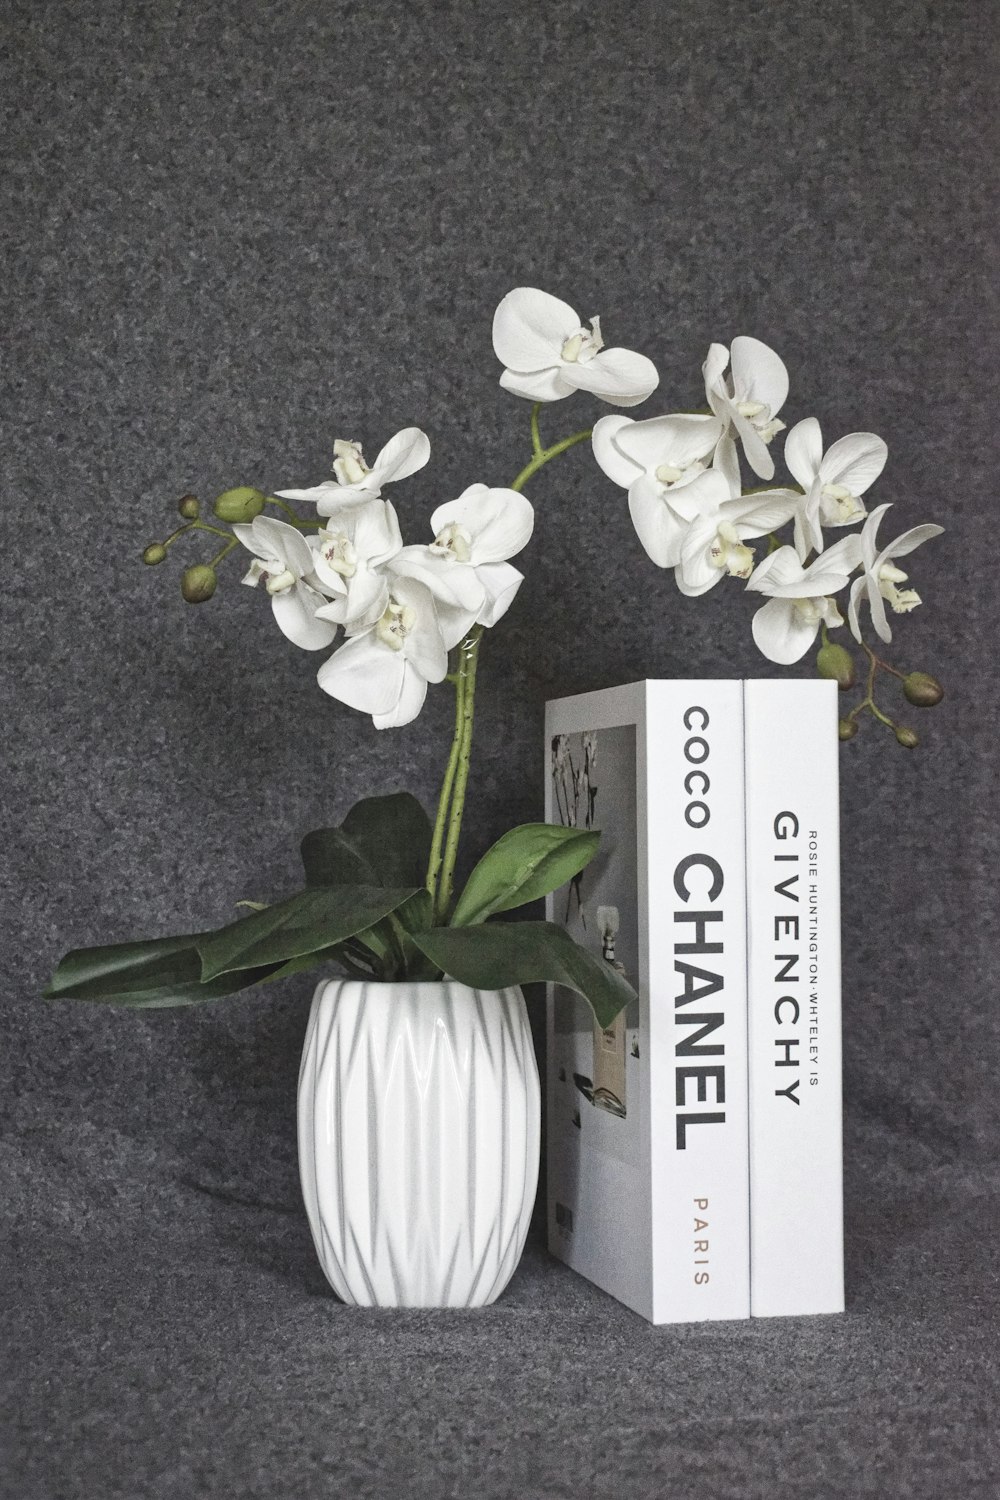 Un jarrón blanco lleno de flores blancas junto a un libro